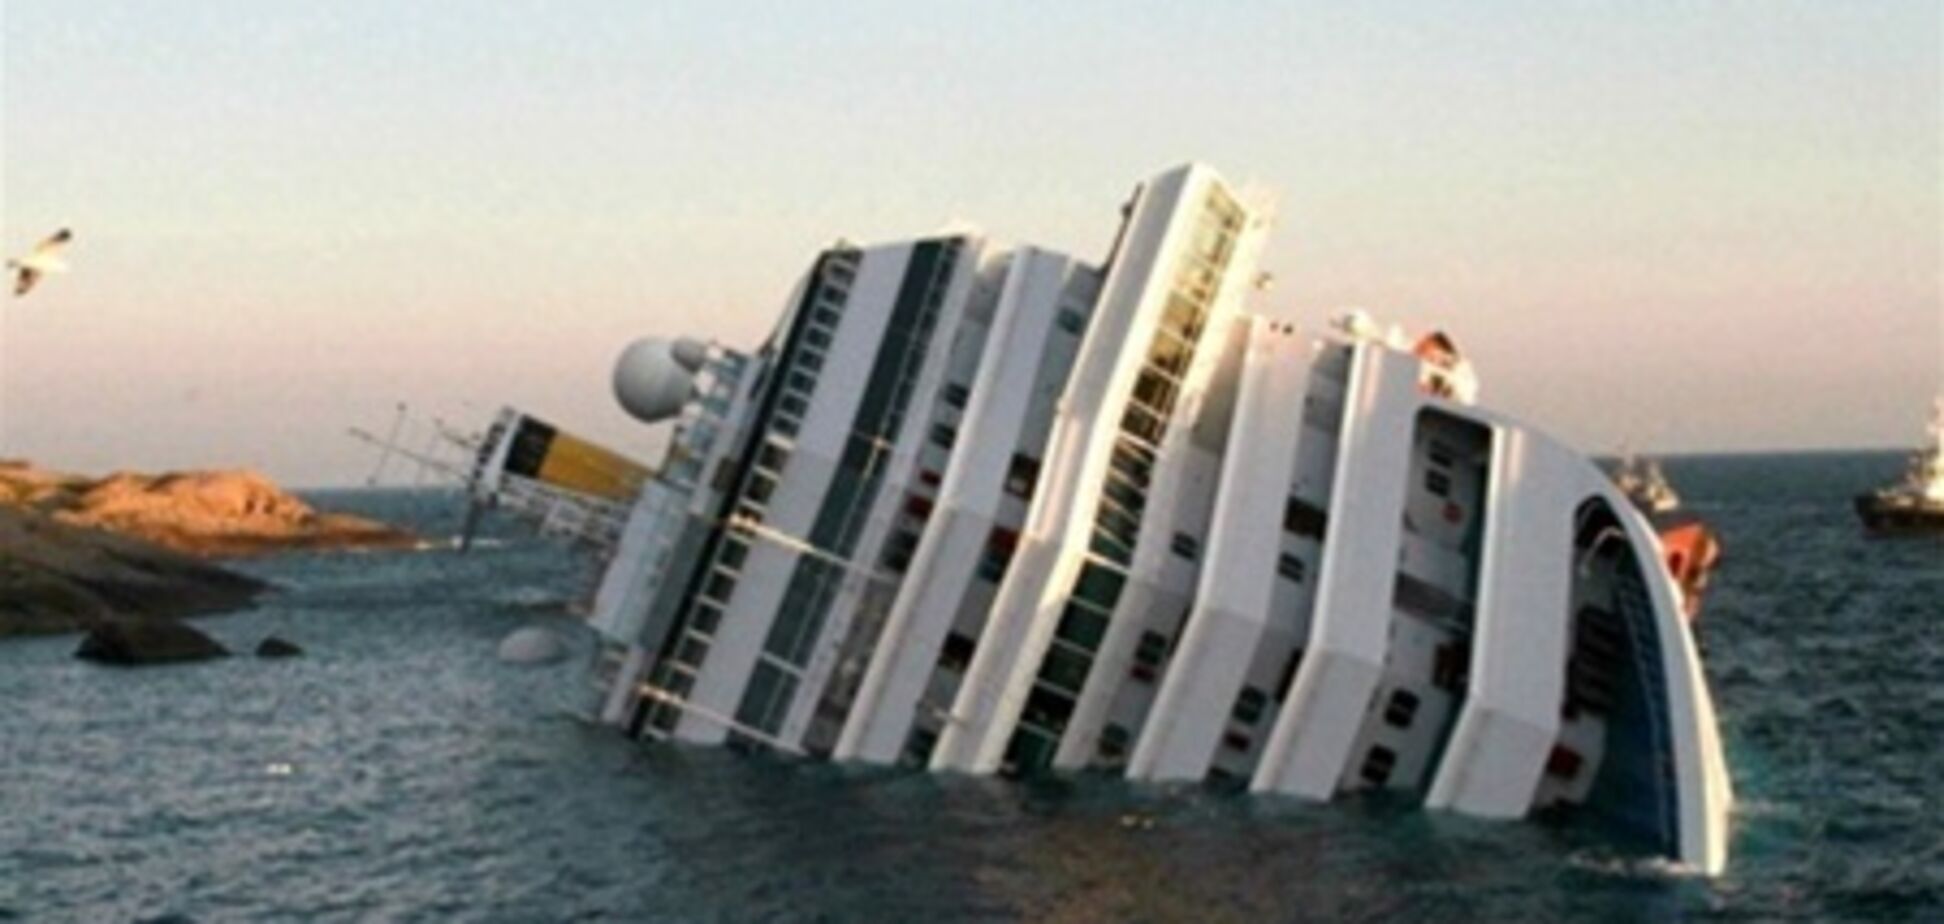 Трагически затонувший лайнер Costa Concordia отбуксируют осенью